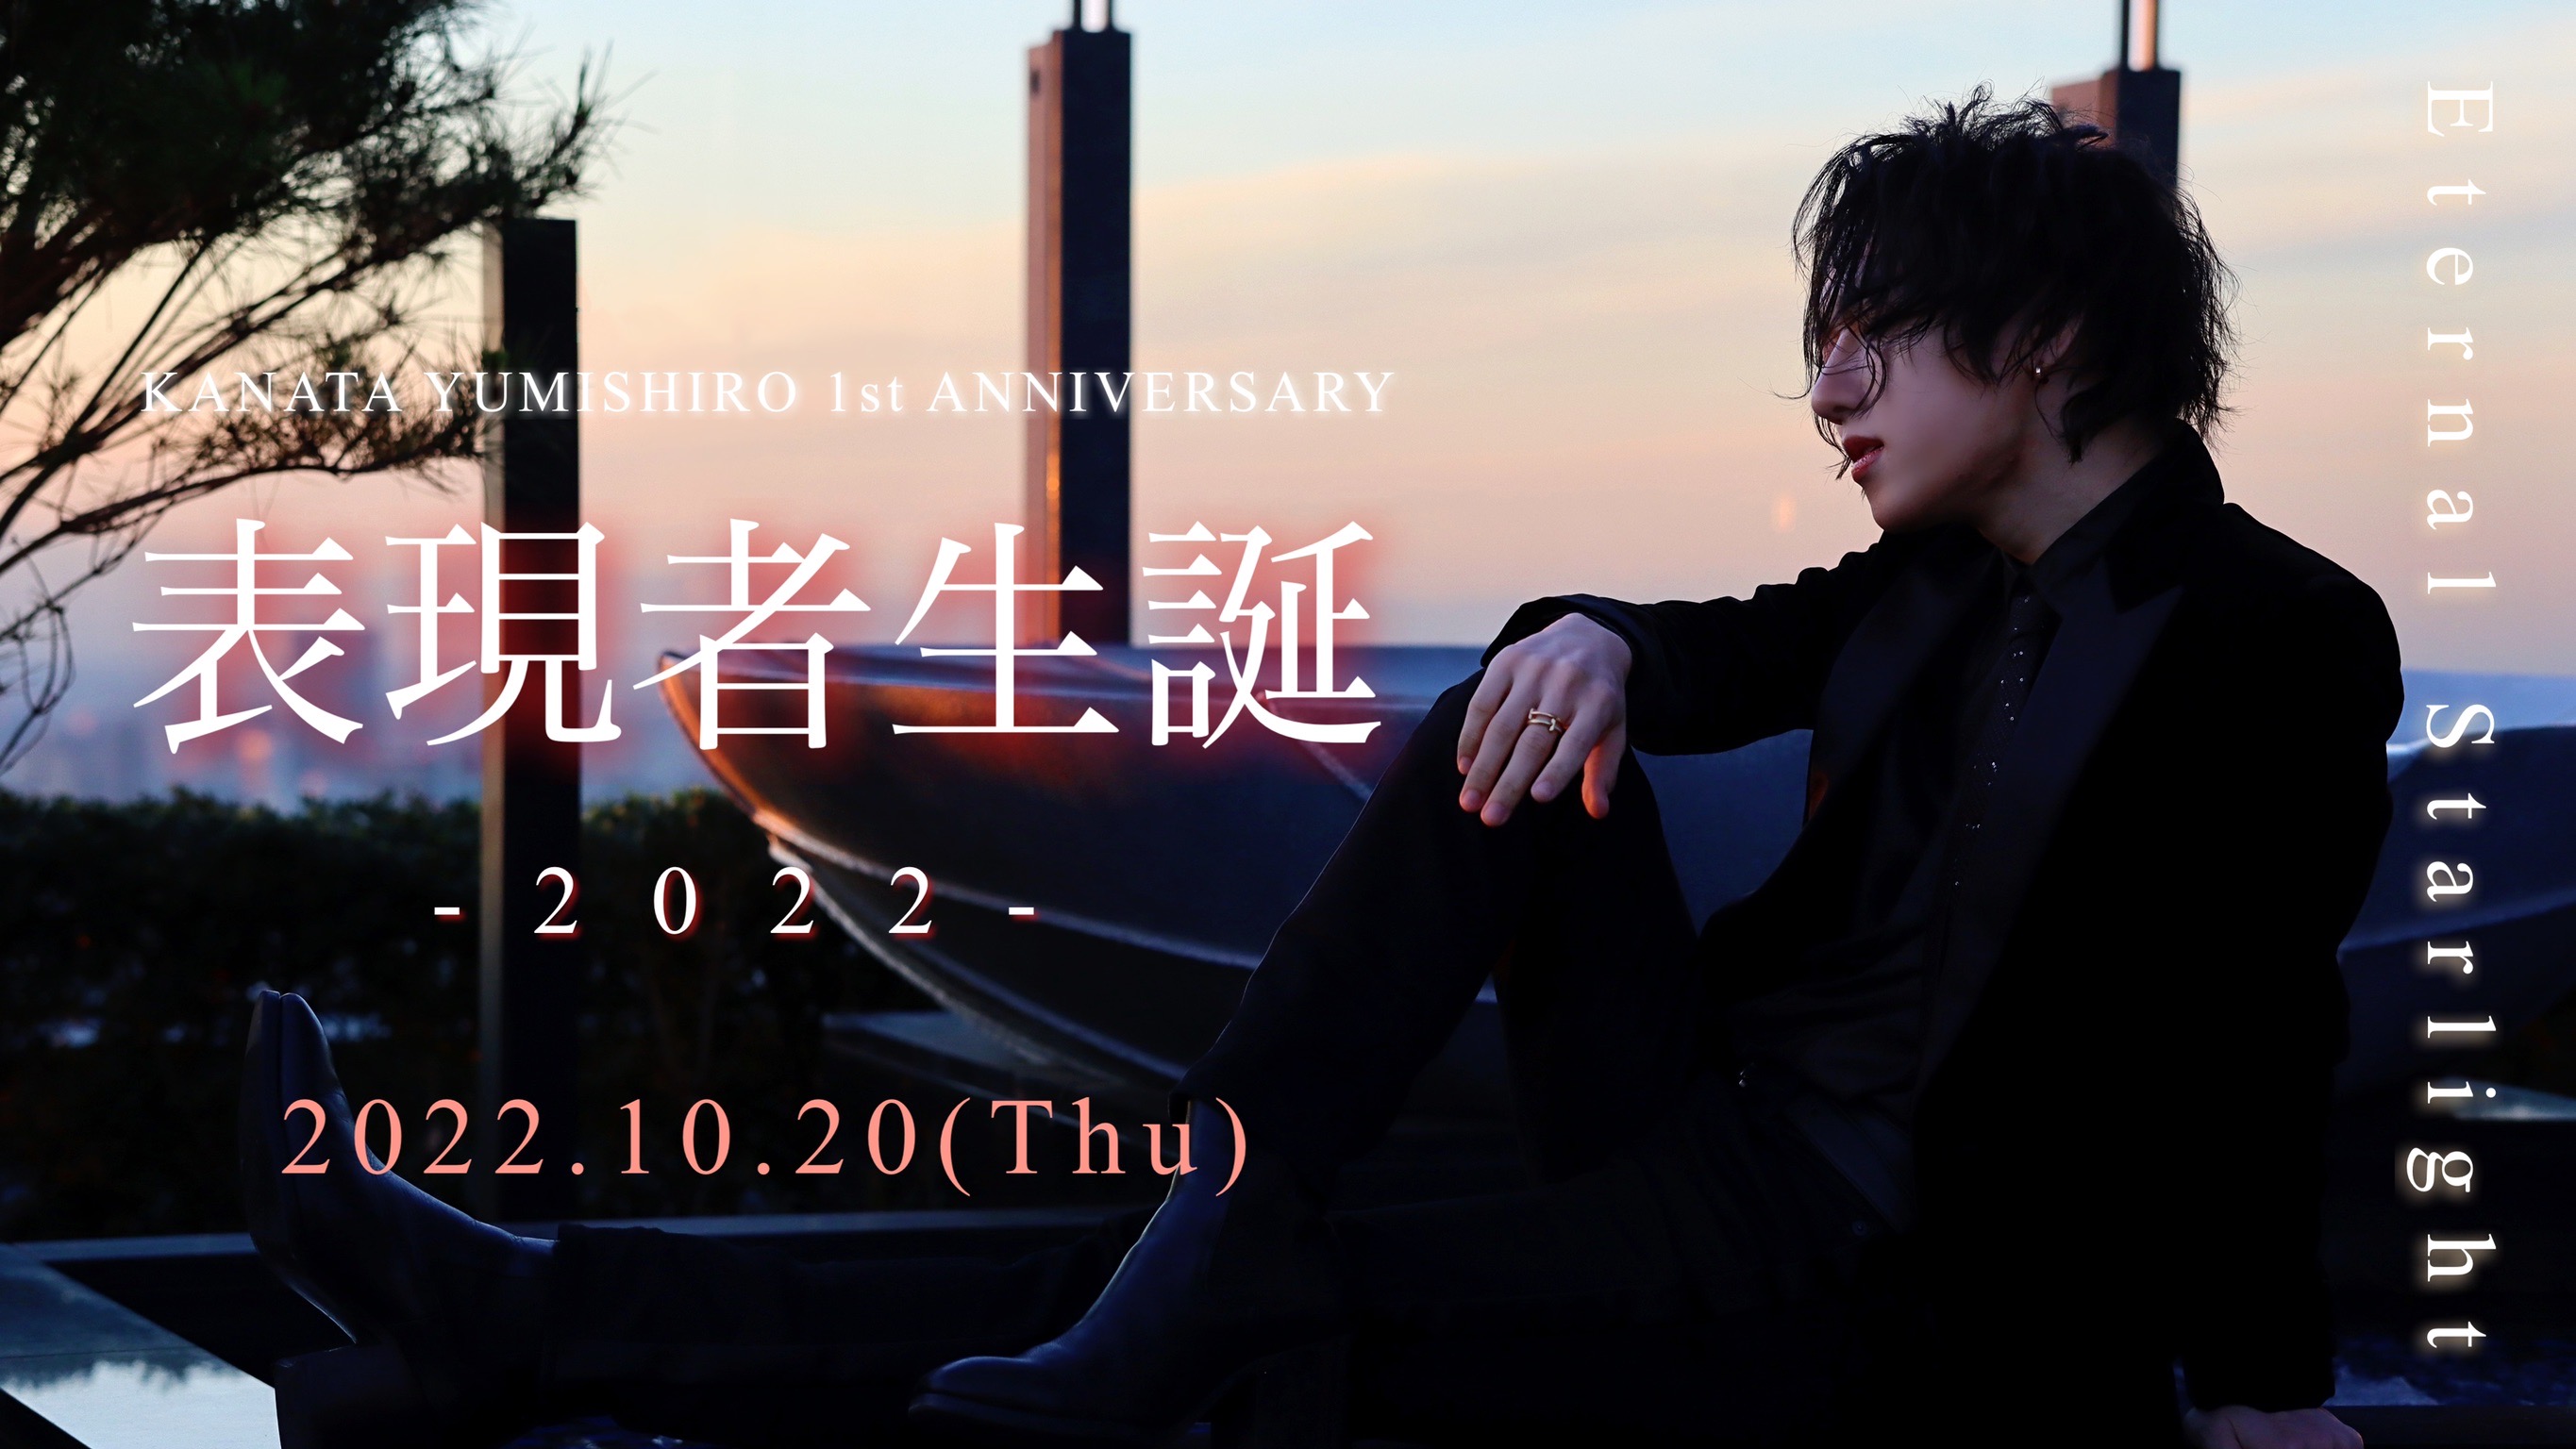 弓代星空 1st Anniversaryコンサート「Eternal Starlight〜表現者生誕2022〜」